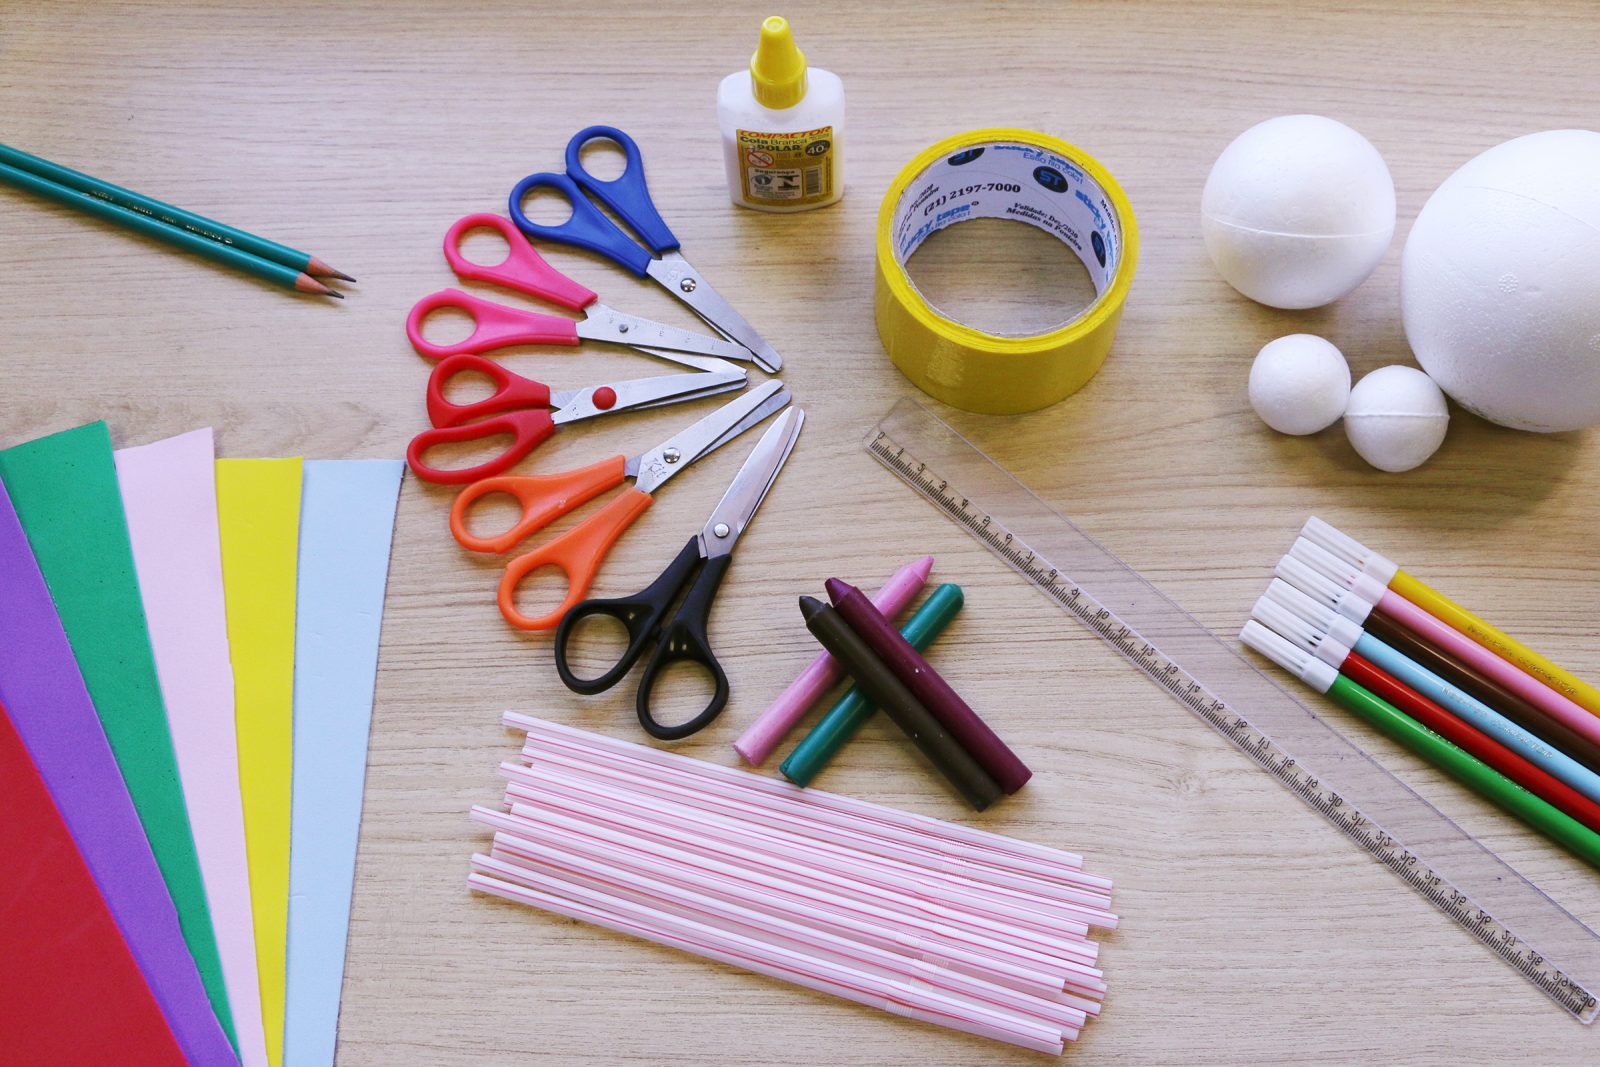 materiais usados na atividade: papéis coloridos, lápis, canudos, tesouras, cola, fita adesiva, bolas de isopor, régua e canetas coloridas